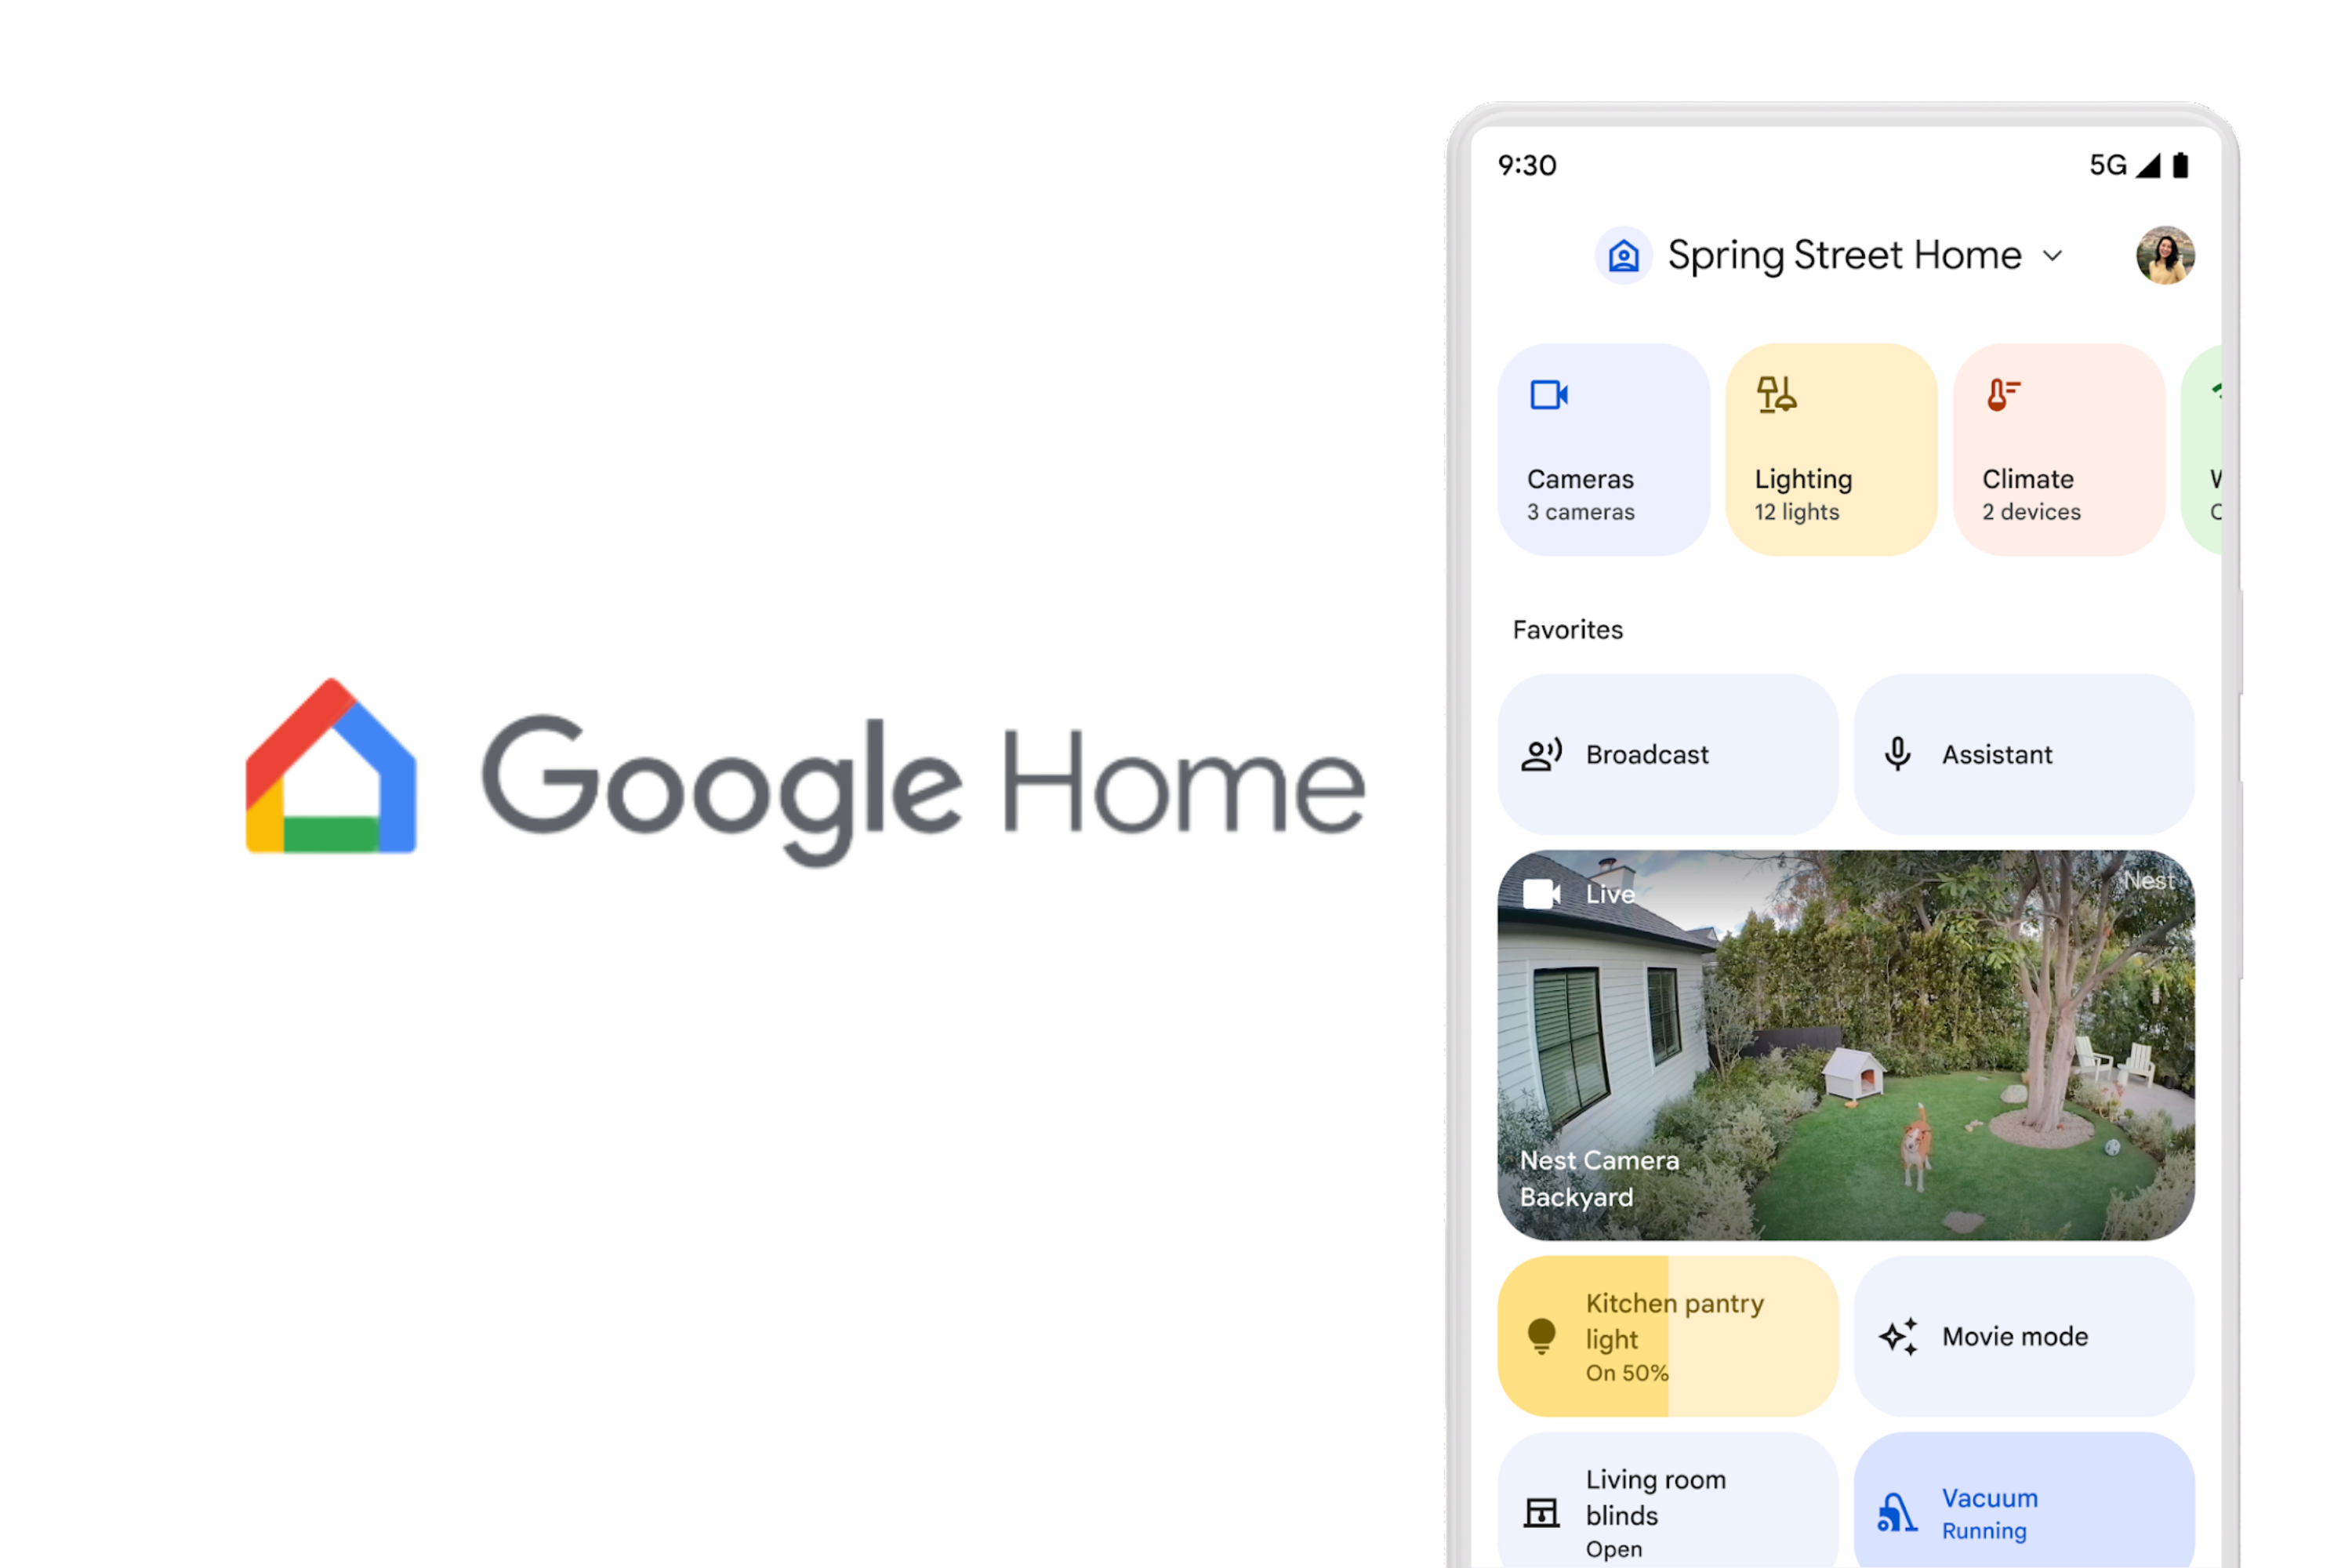 Google Home screen next to Google Home logo 